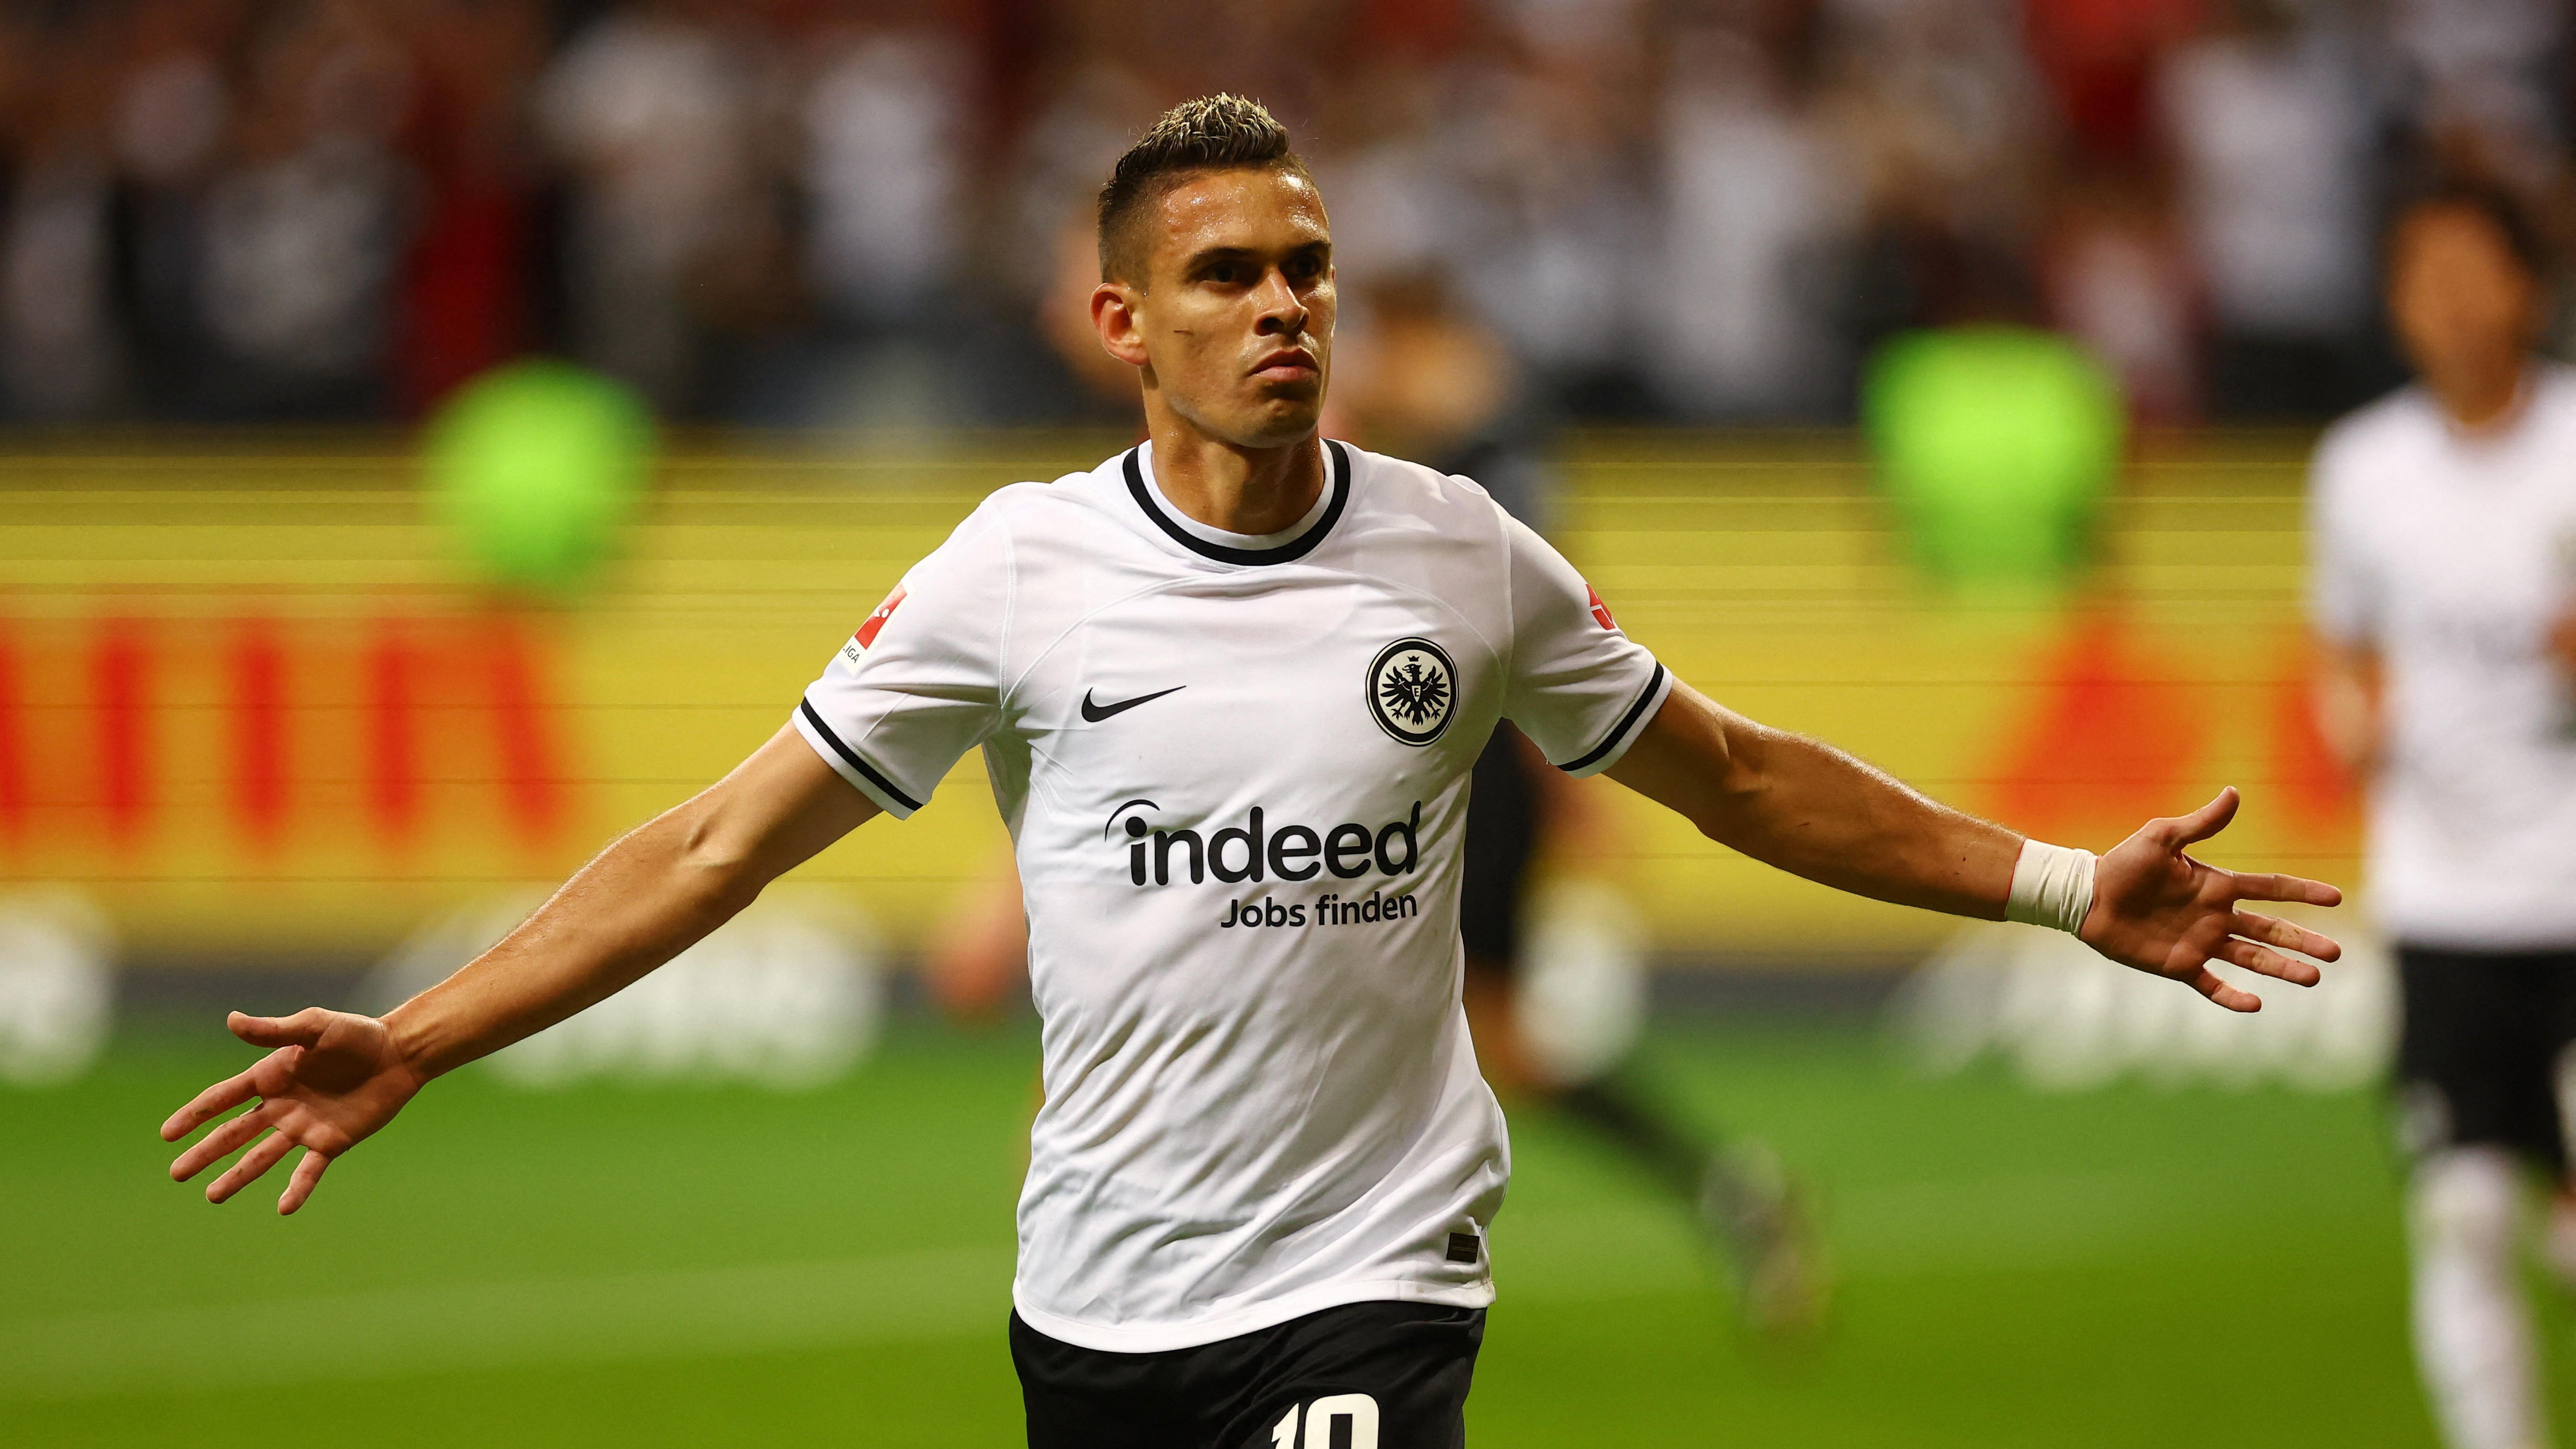 El técnico del Frankfurt elogió a Santos Borré tras anotar doblete en amistoso, pero el colombiano sigue buscando salir del club